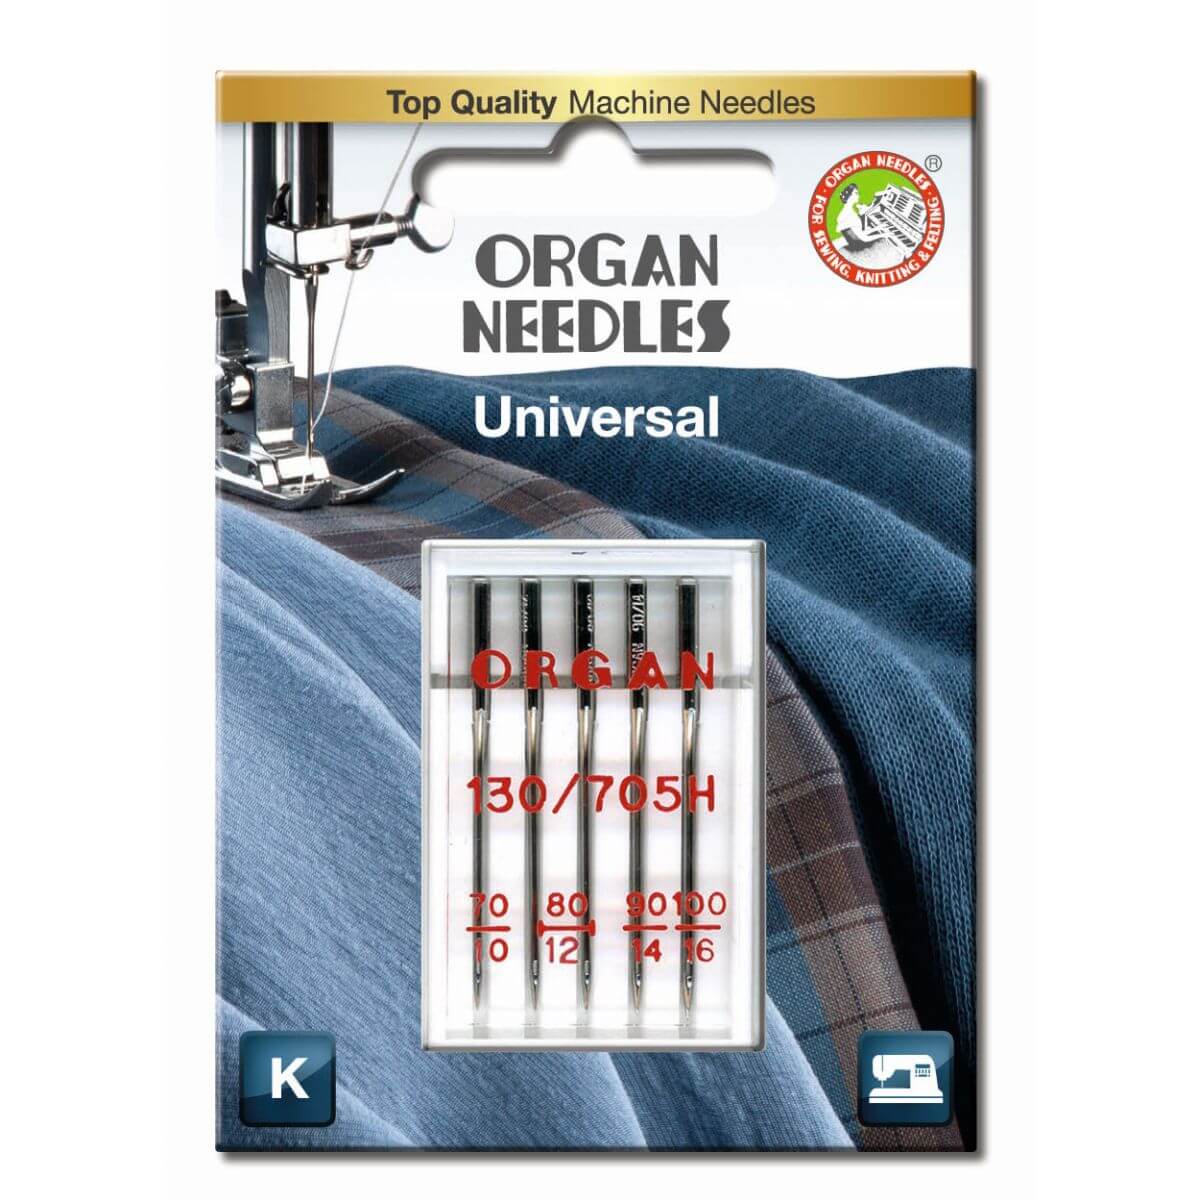 Organ Needles Universal Assortment (Size 1x
70x 2x 80, 1x 90, 1x 100)